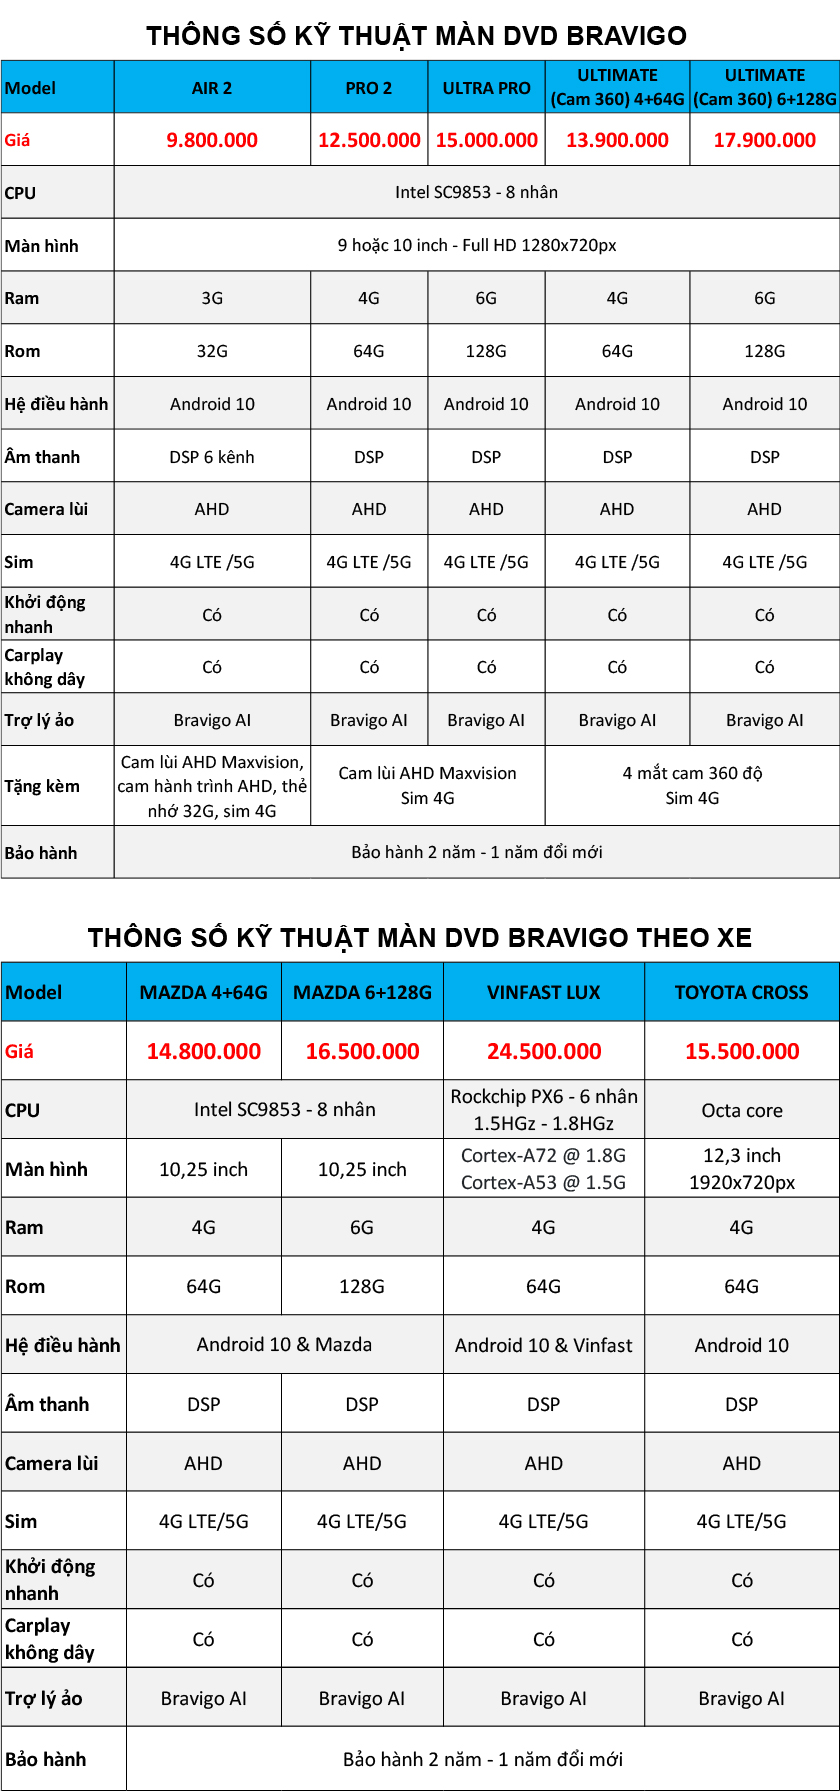 Bảng giá và thông số màn hình DVD Android Bravigo